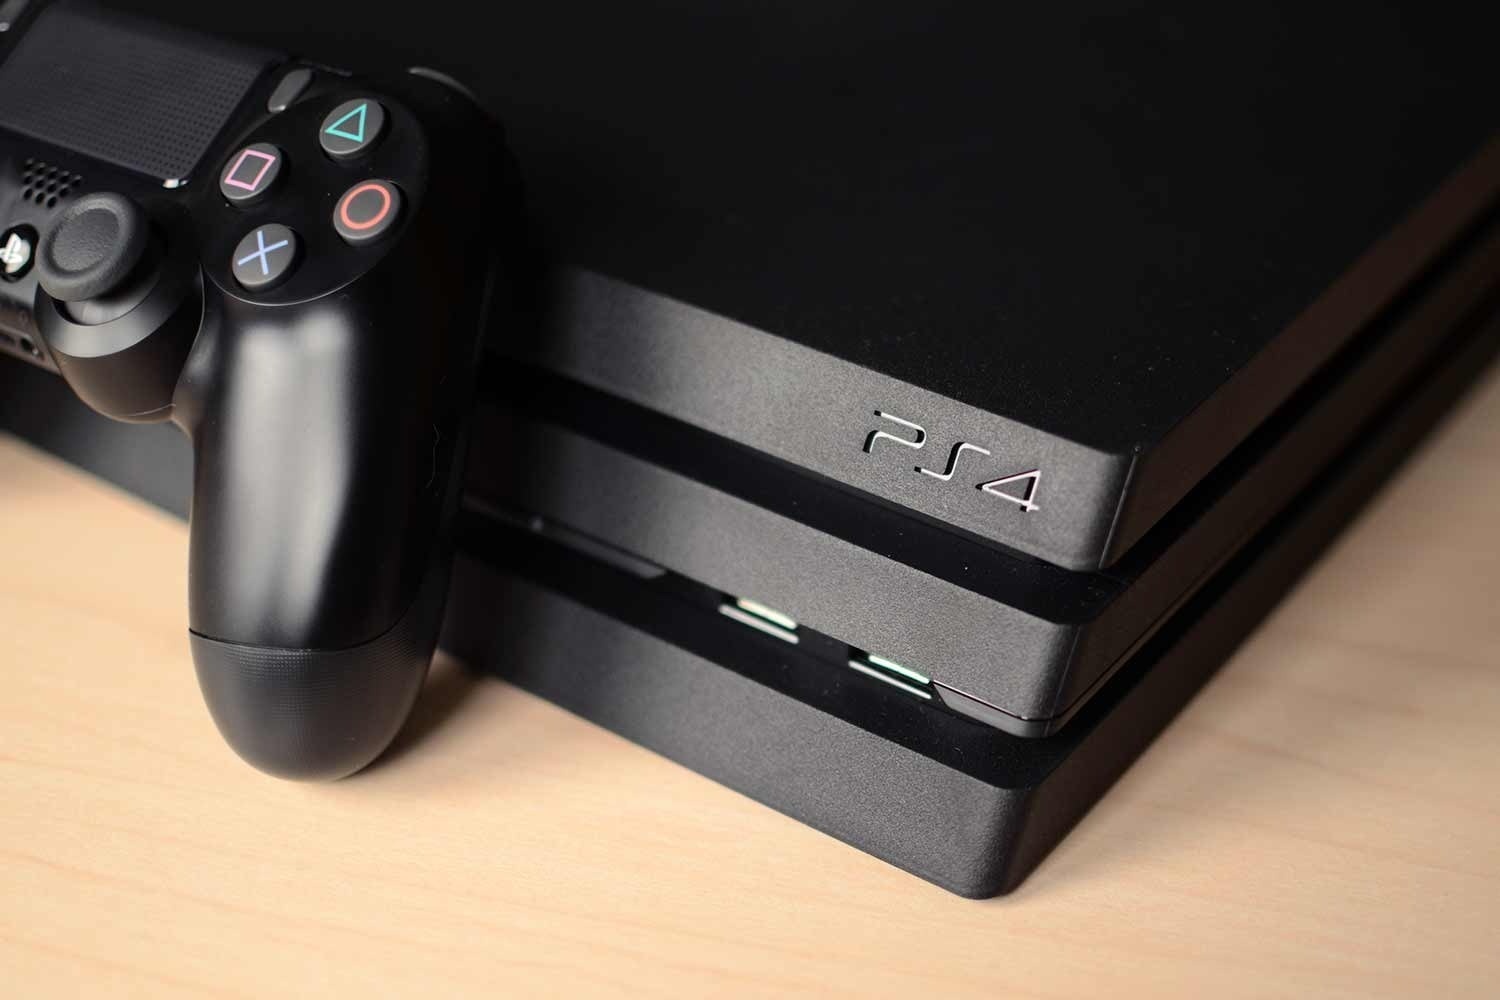 Sony запустила в рознице распродажу игр, консолей и геймпадов